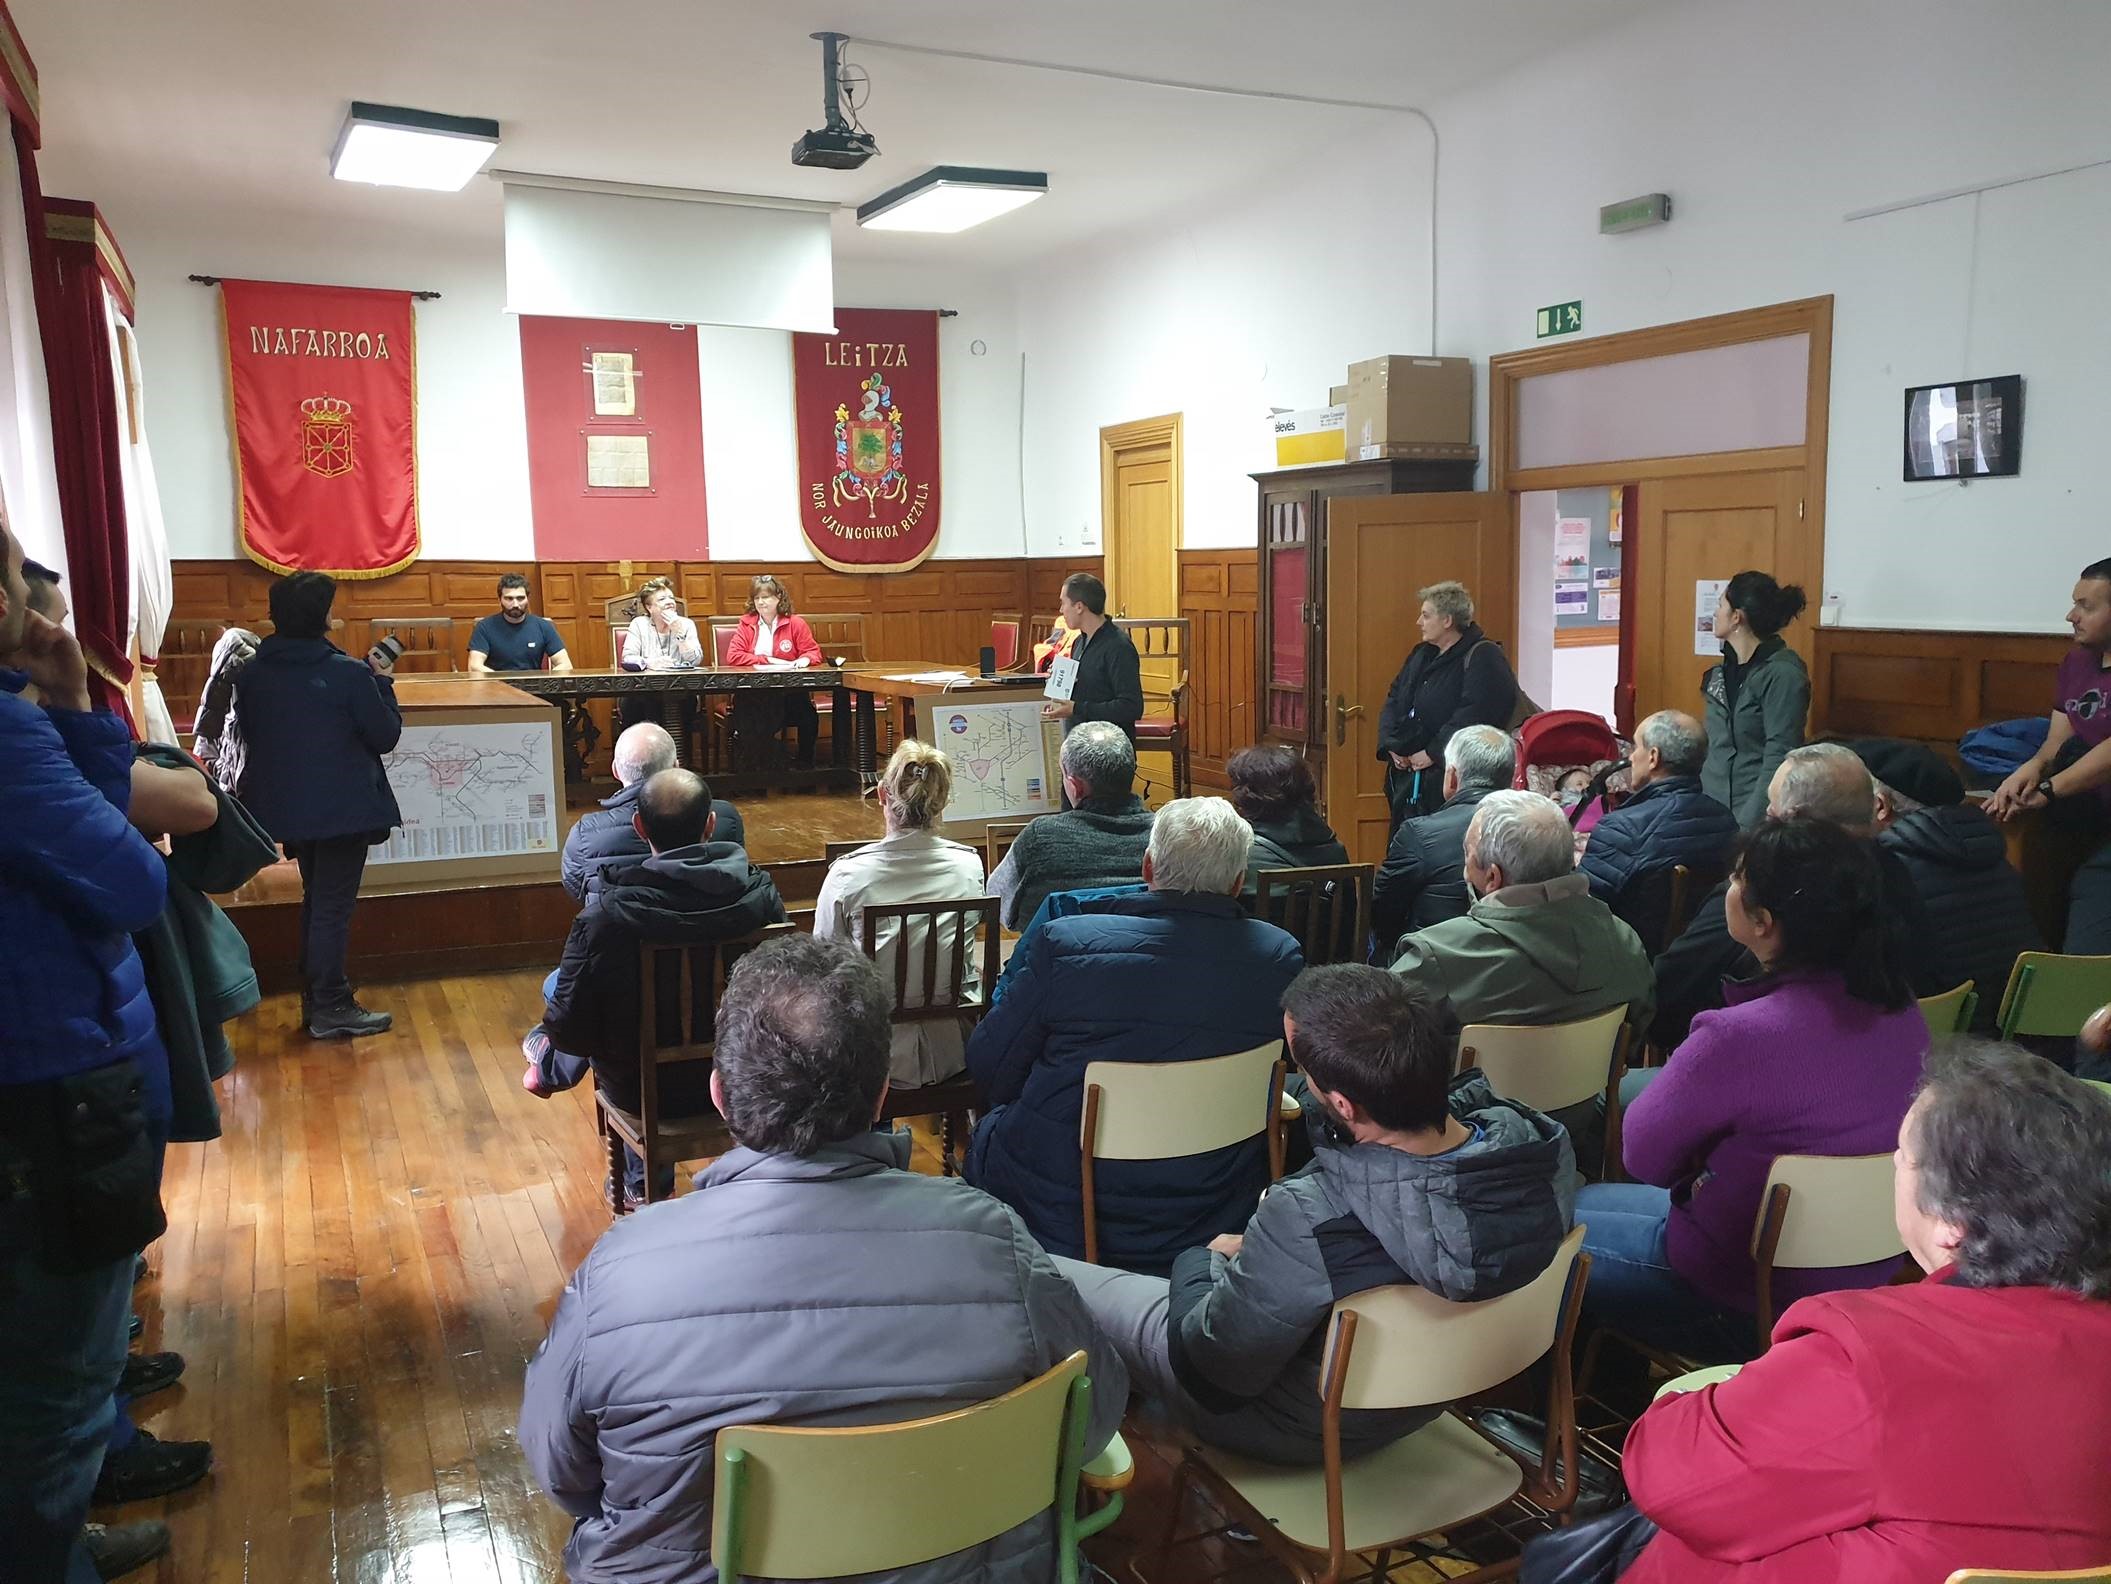 Salón de plenos del Ayuntamiento de Leitza durante la reunión